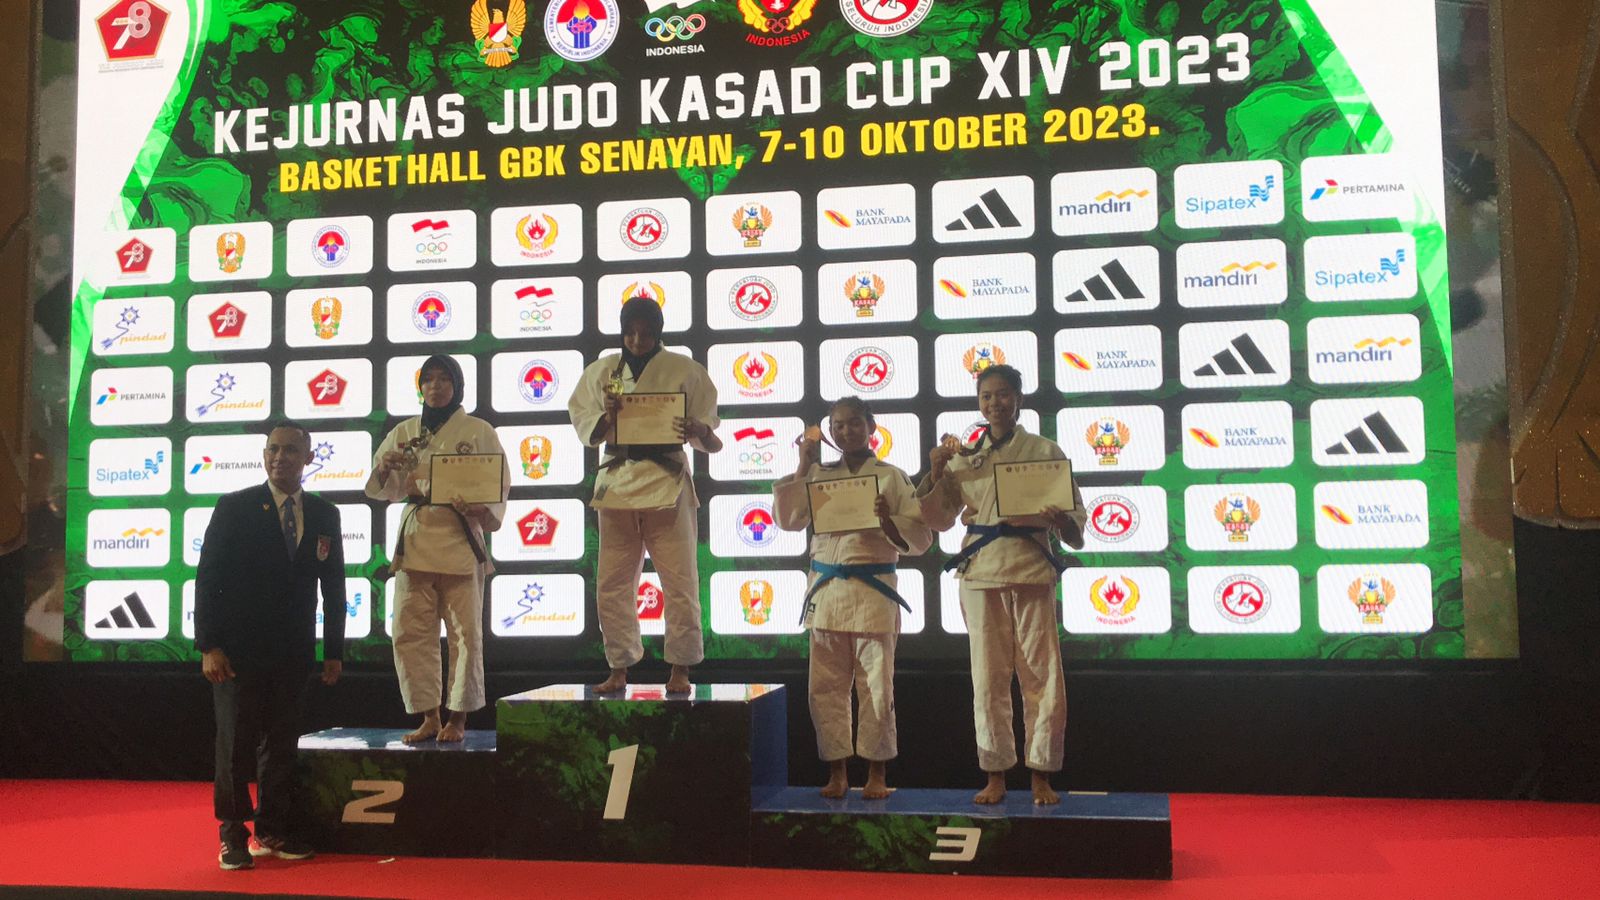 Hebat! Medali Perunggu Berhasil Diraih Atlet Judo Kabupaten Tegal di Kejurnas  